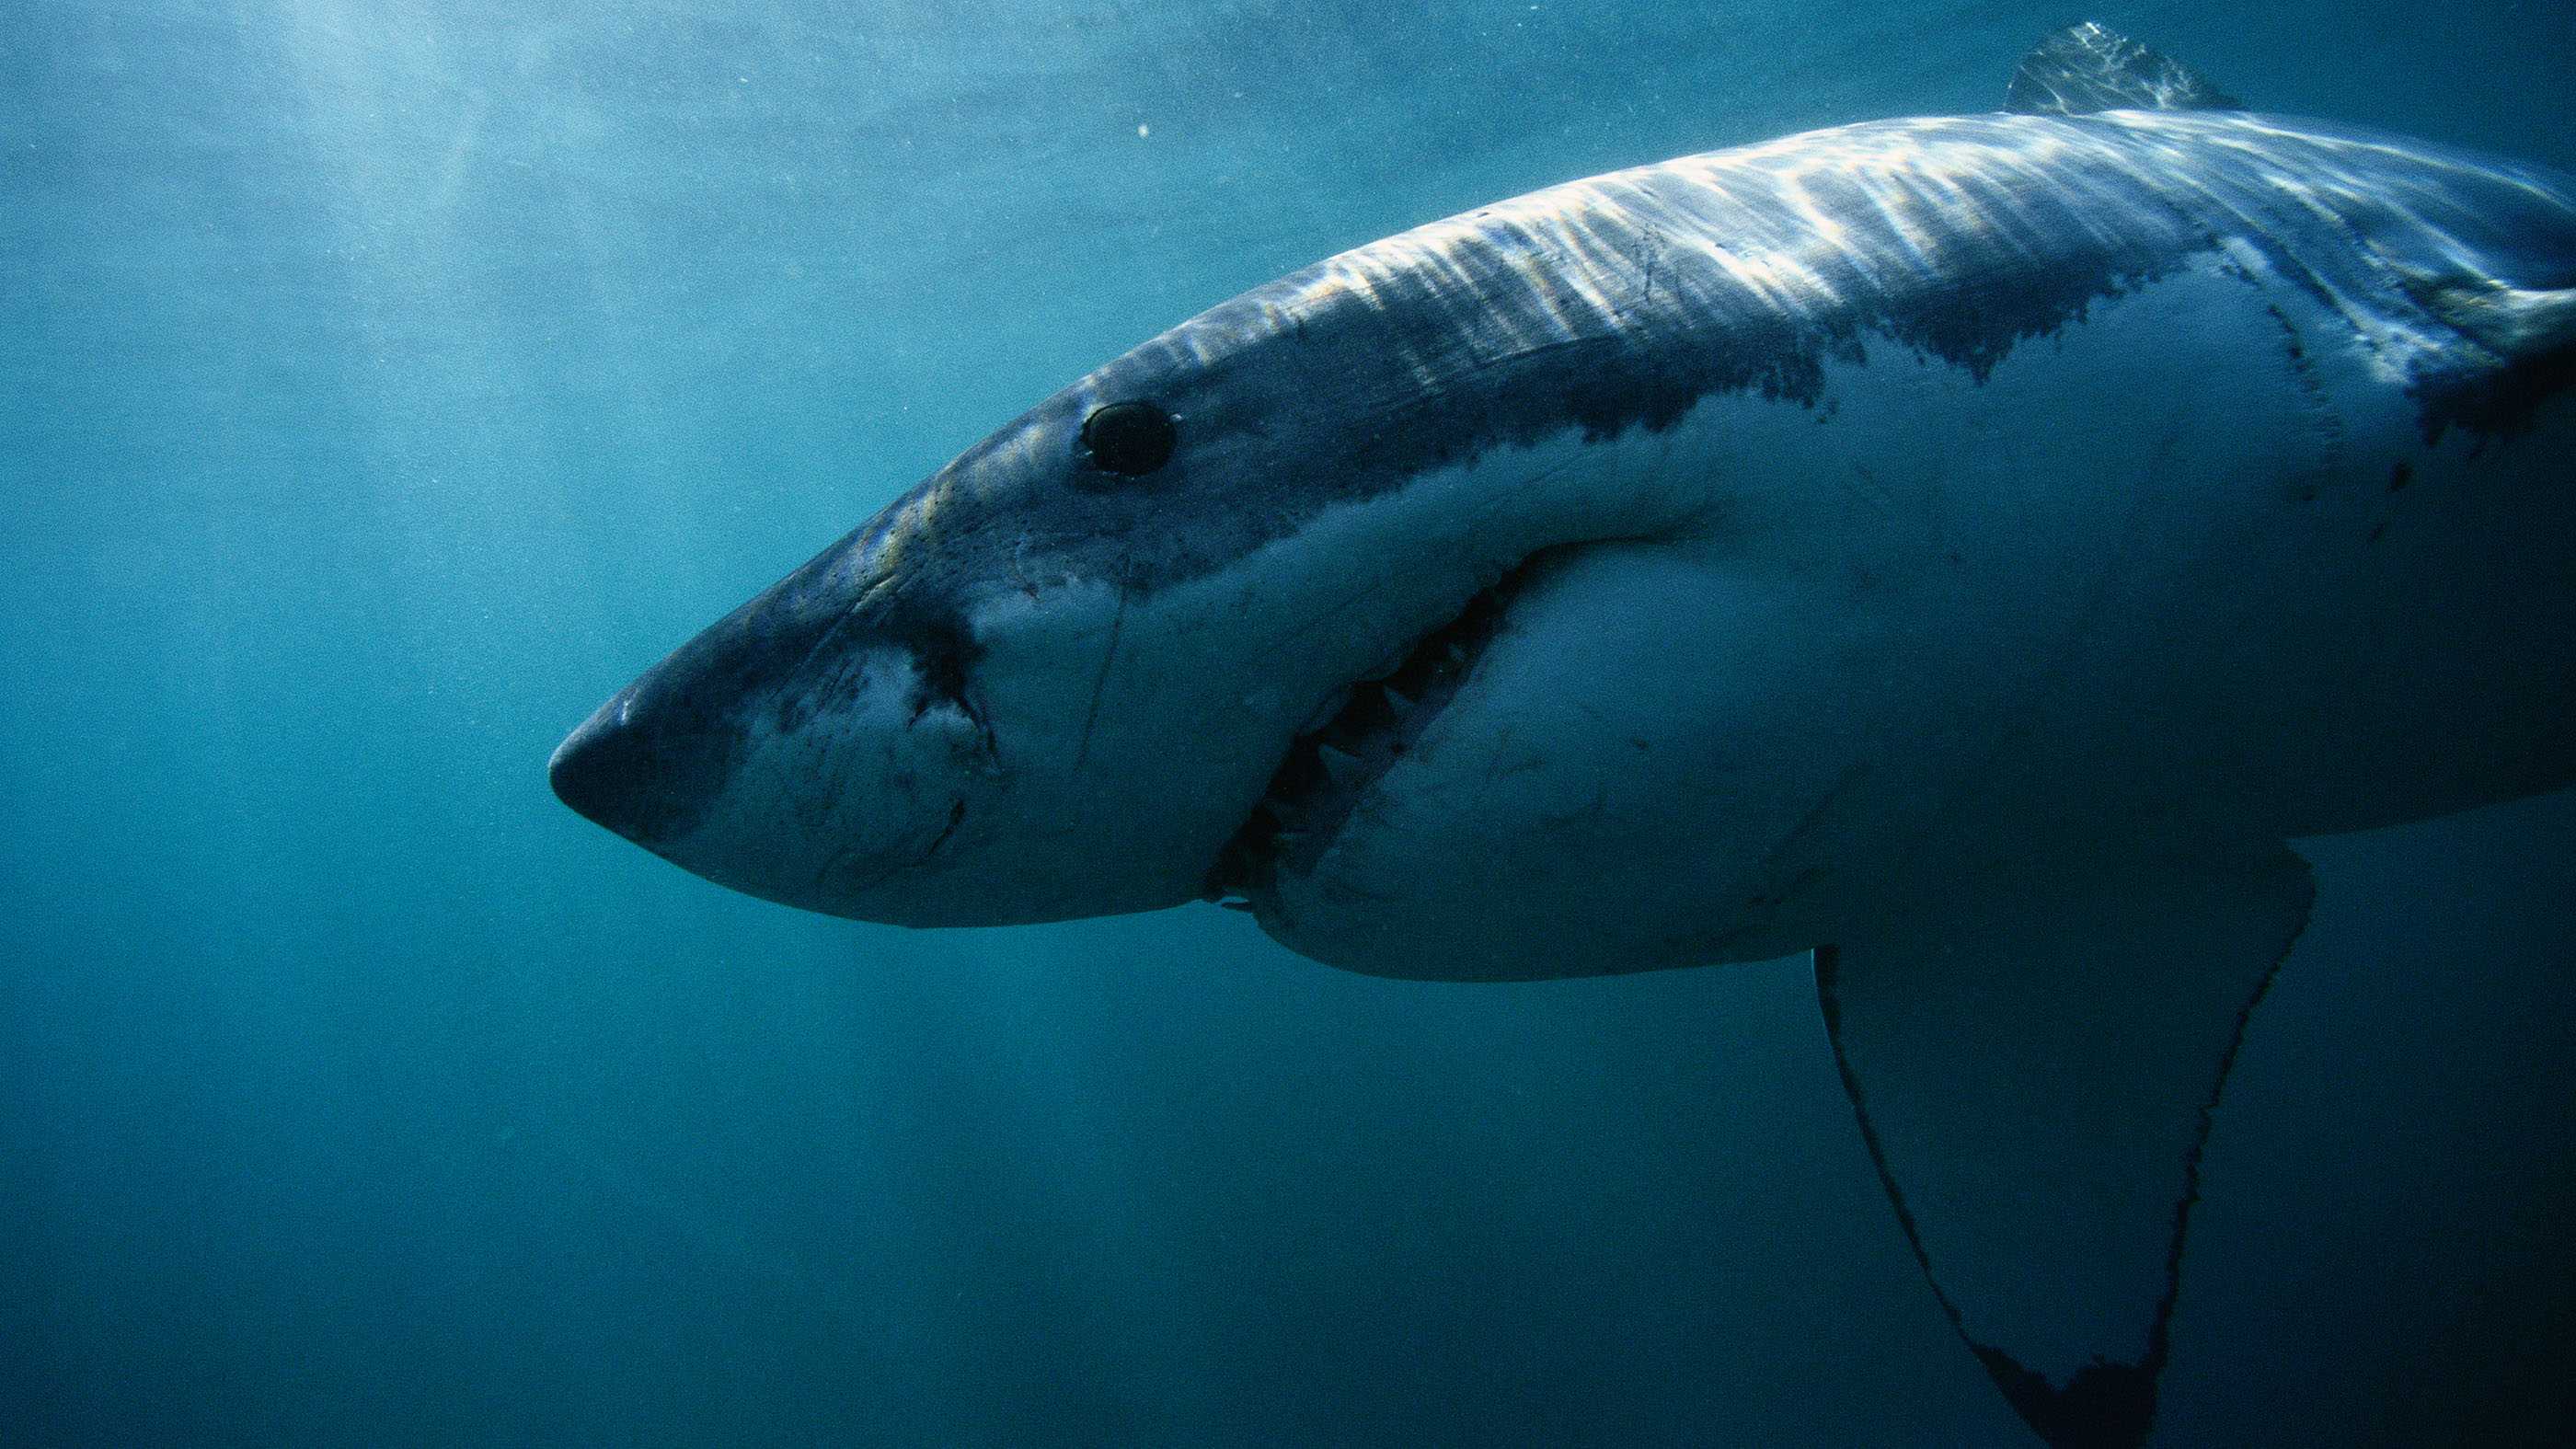 К тигровой акуле прикрепили камеру, чтобы проследить за ее охотой на черепах